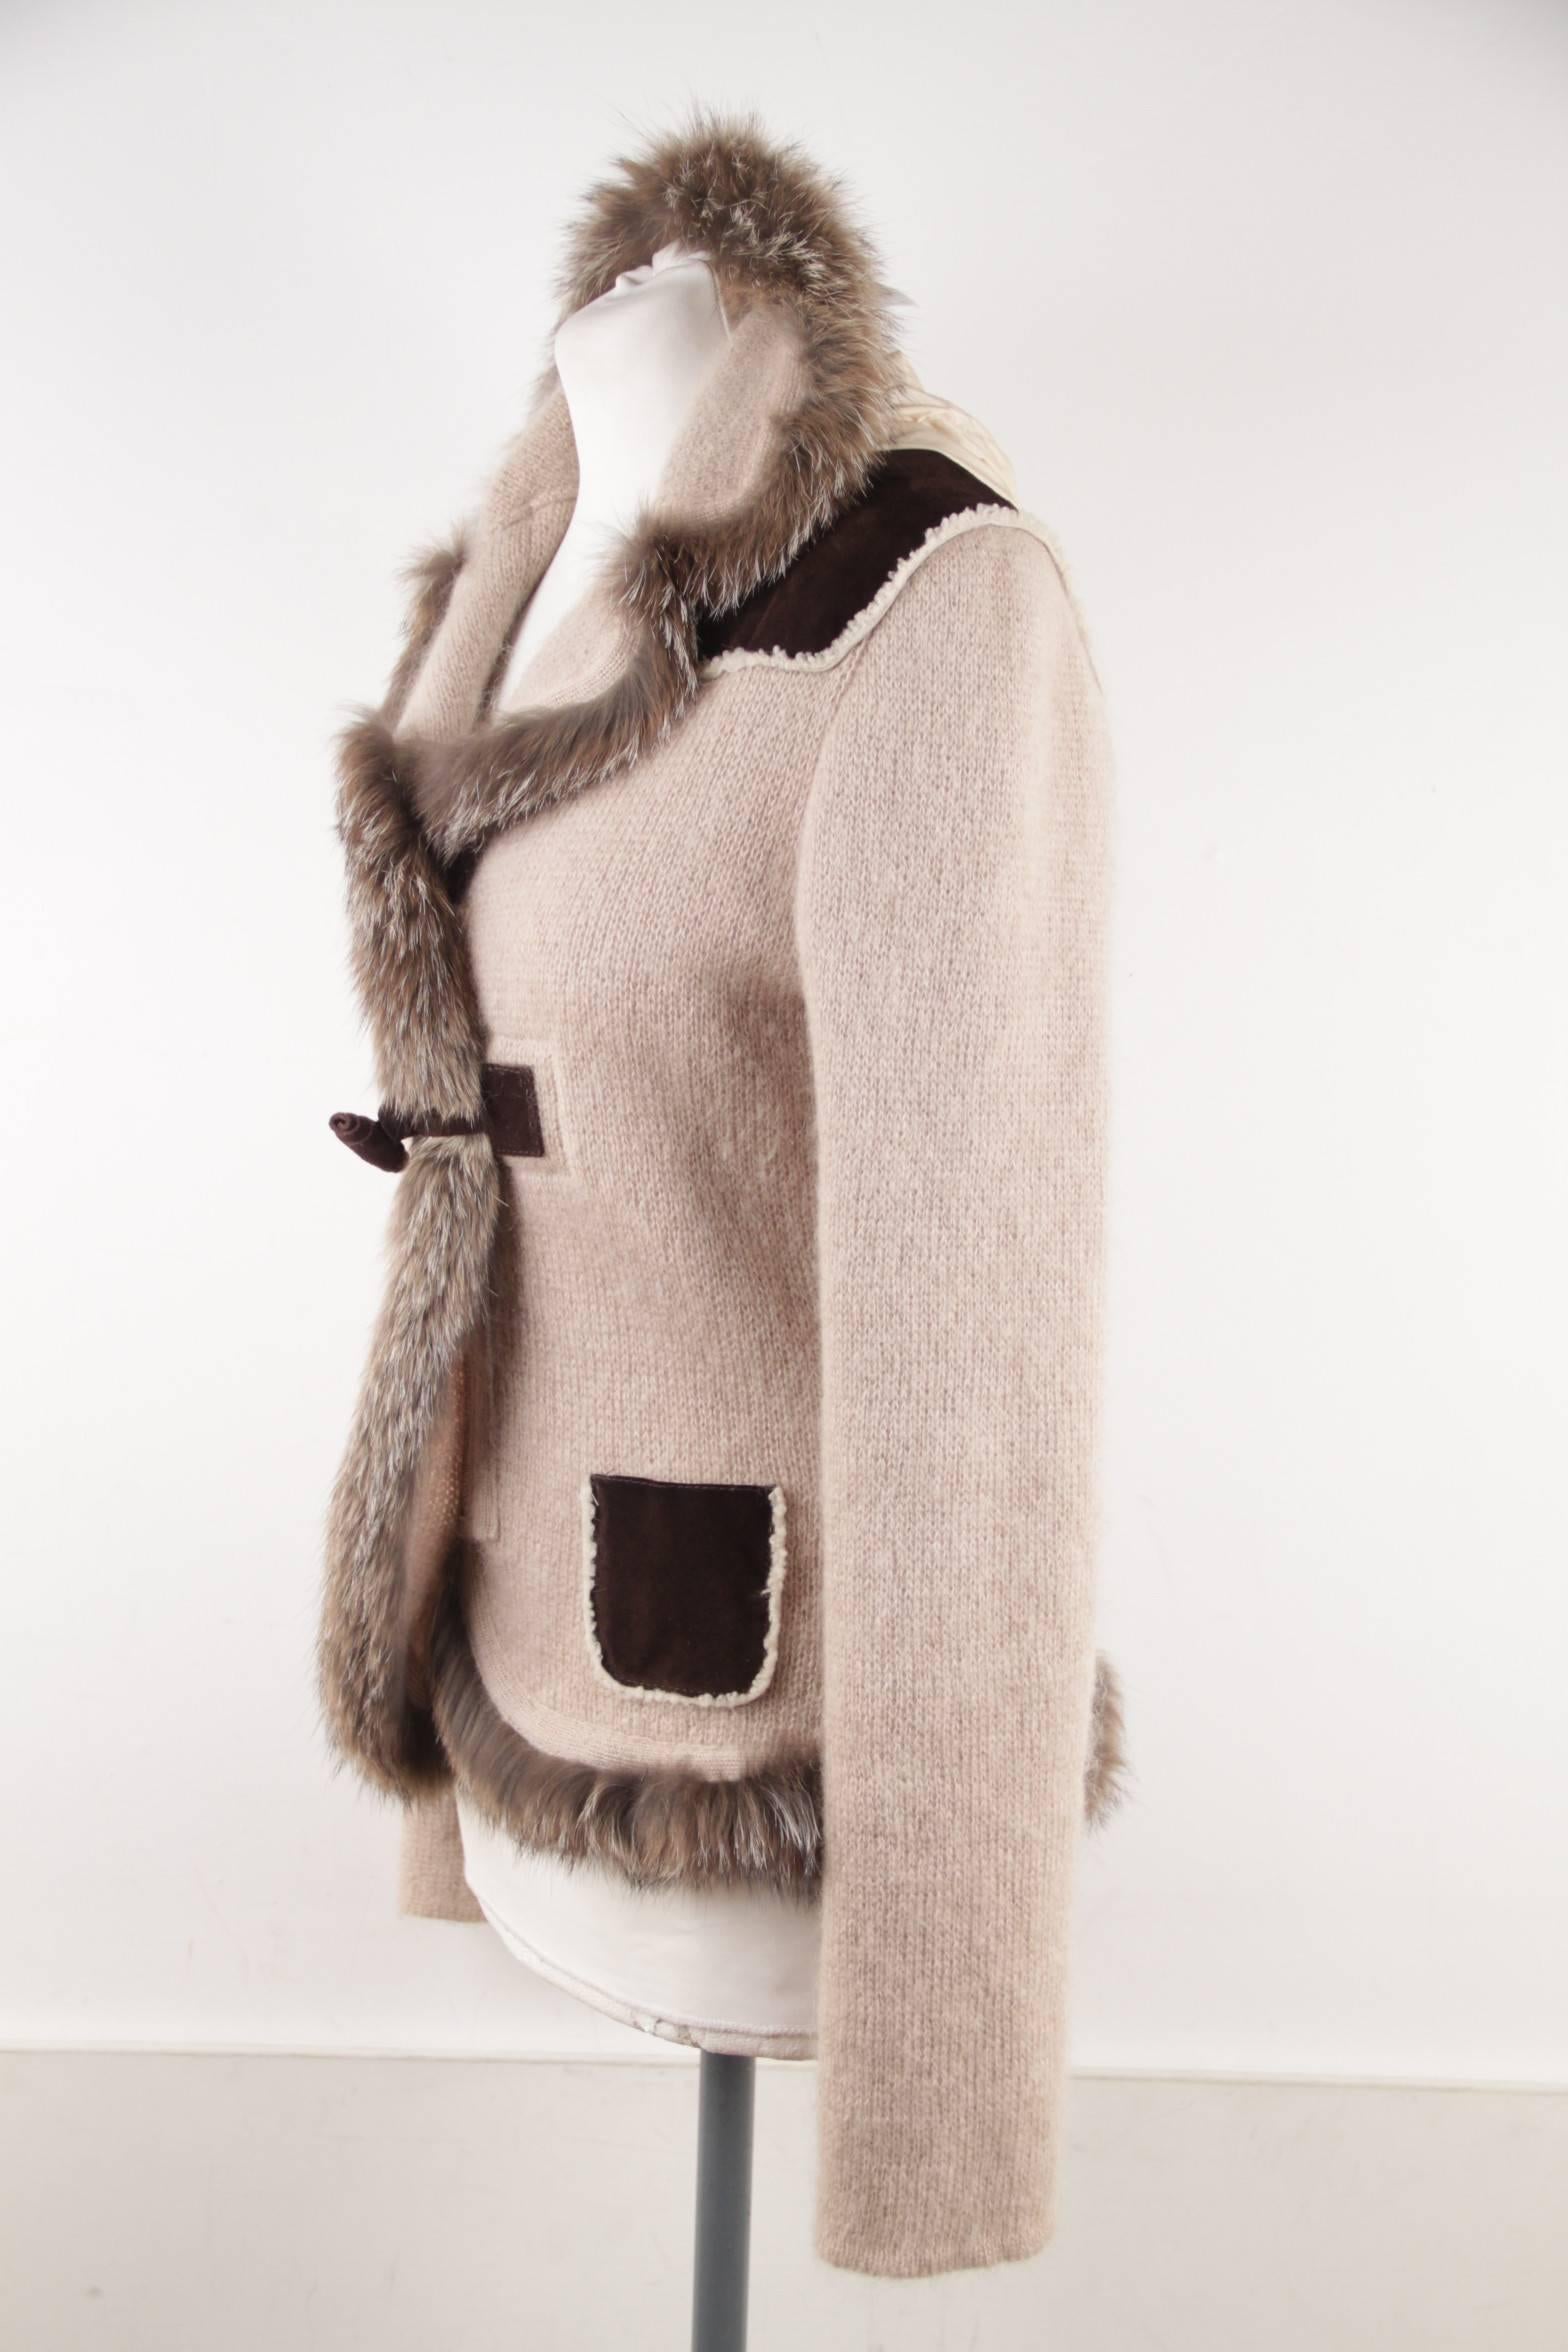 PRADA Italian Beige Wool Blend KNIT CARDIGAN Sweater w/ FOX FUR TRIM Size 42 IT  2